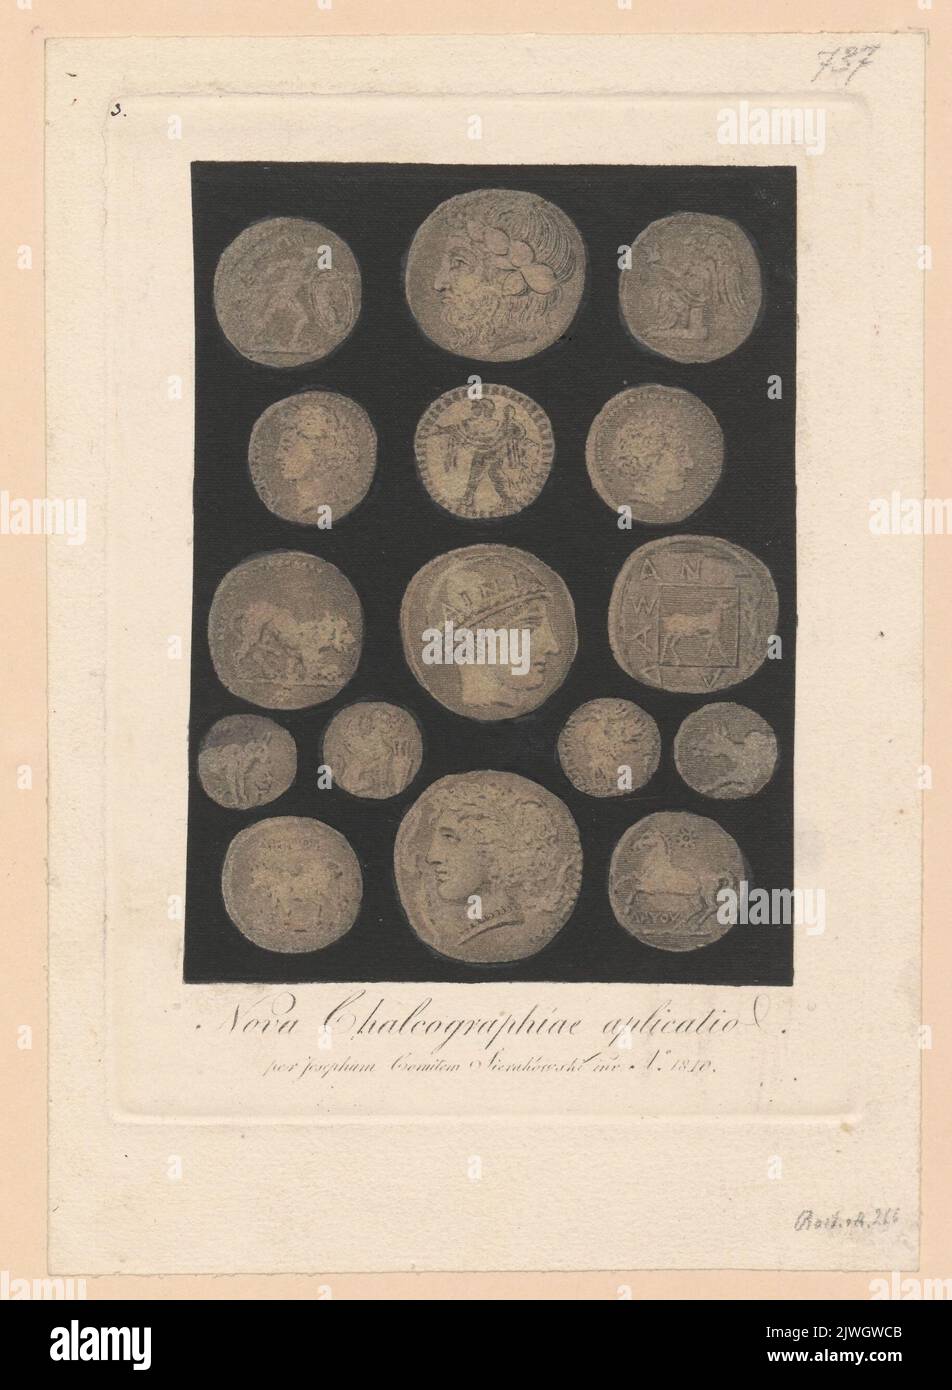 Pièces grecques anciennes. Nova Chalcographiae aplicatio. Sierakowski, Józef (1765-1831), graphiste Banque D'Images